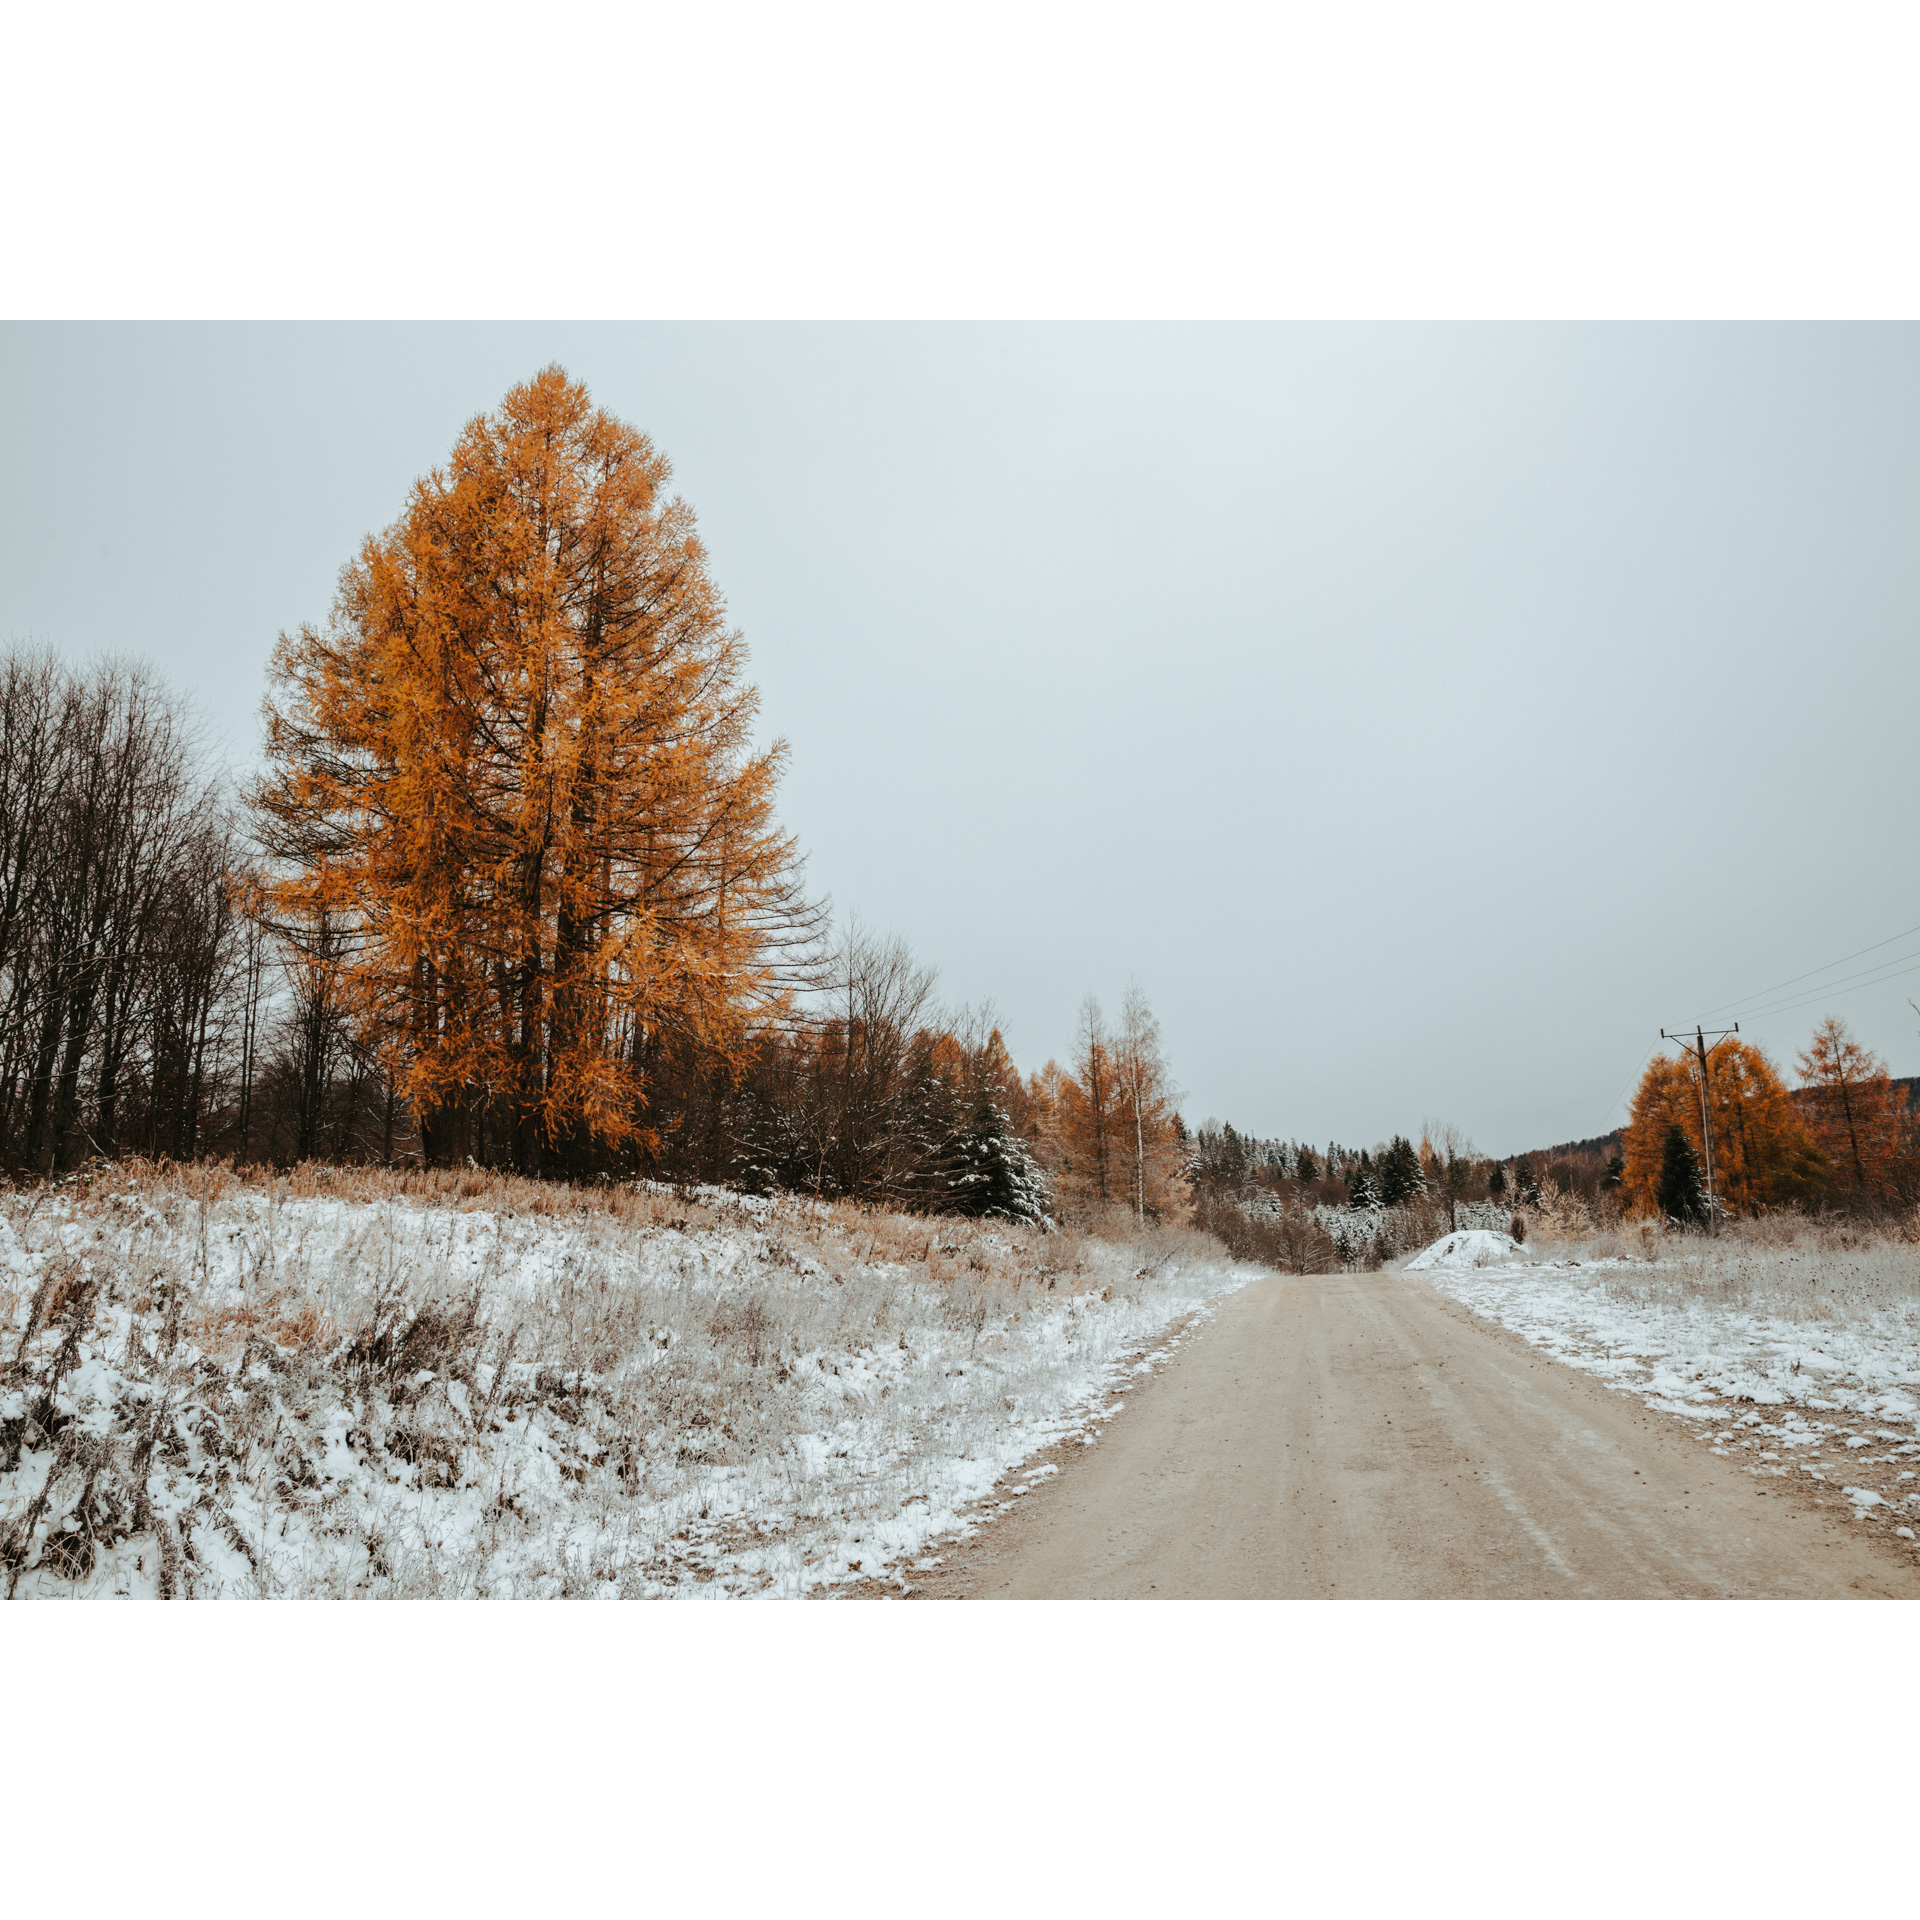 Piaszczysta droga biegnąca wzdłuż zaśnieżonego pobocza, w tle wysokie drzewo w rudo-złotych barwach i niskie kolorowe krzewy i drzewa